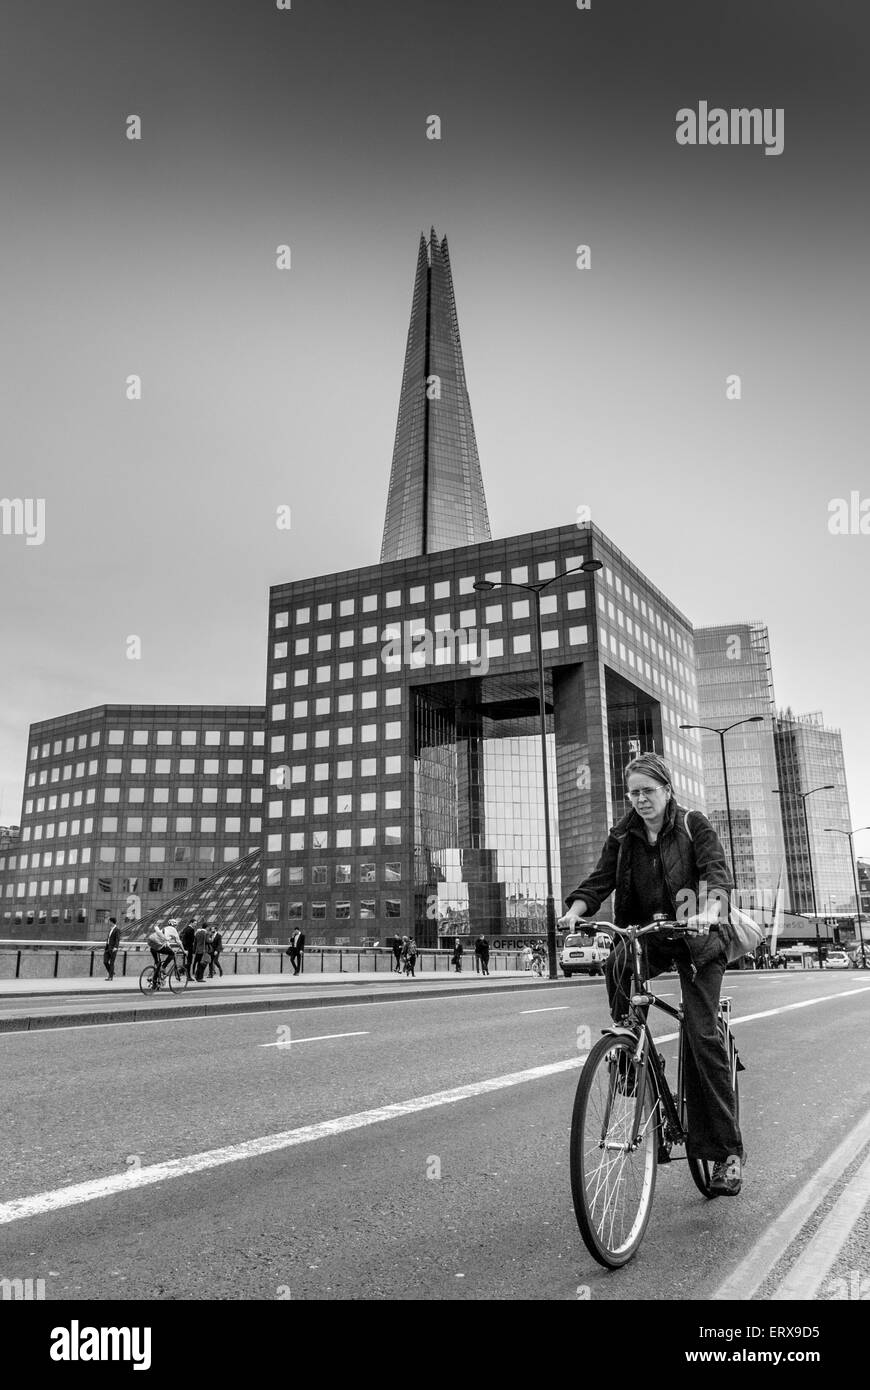 Radfahrer über London Brücke auf Fahrrad mit The Shard im Hintergrund, London, UK. Stockfoto